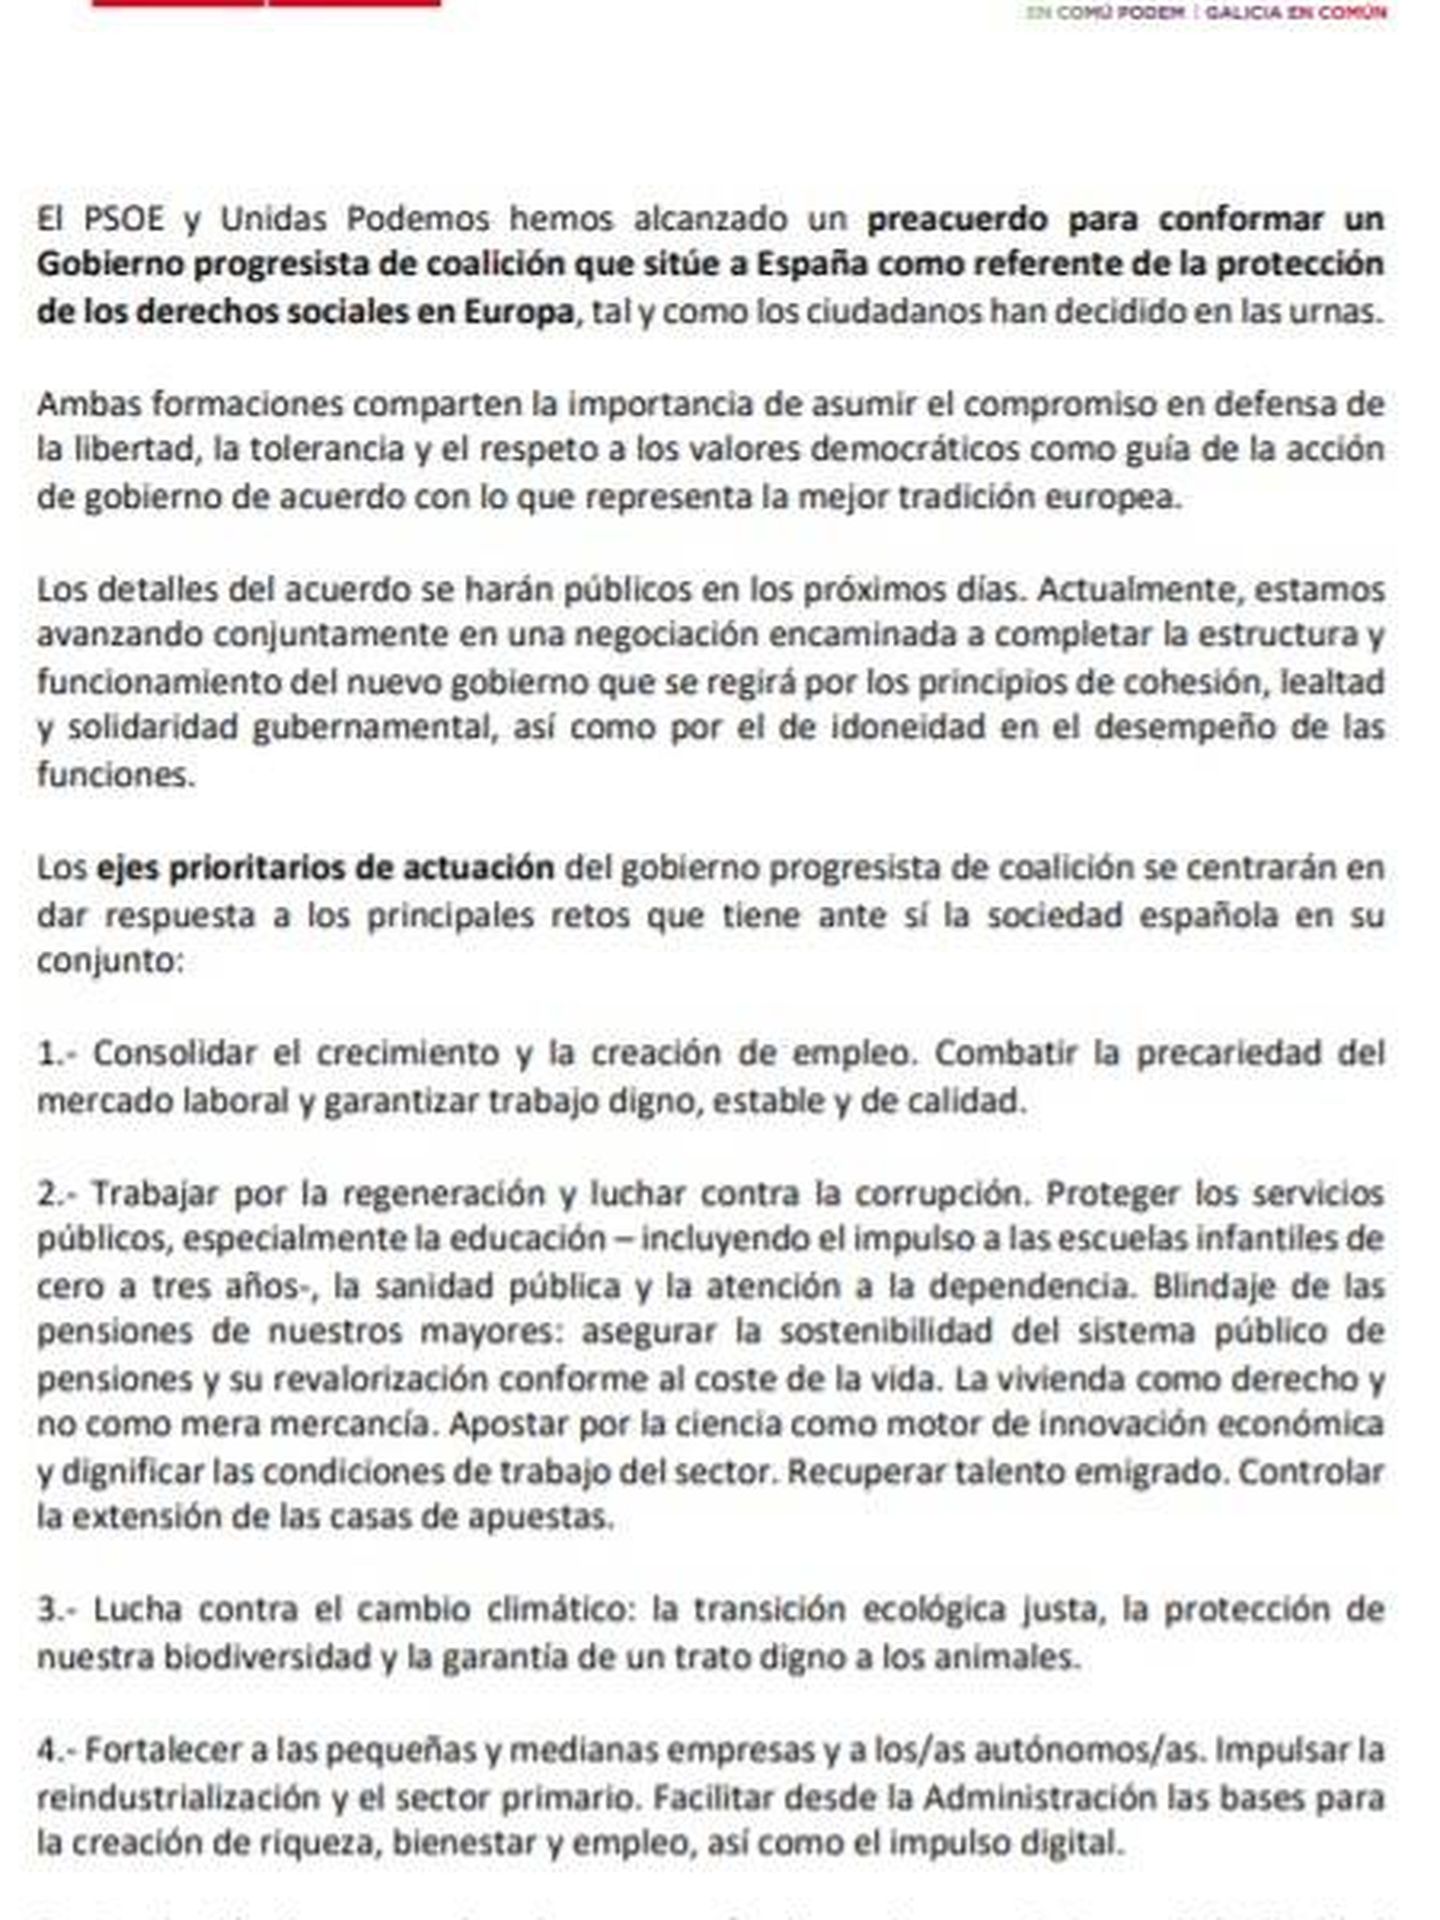 Consulte aquí en PDF el preacuerdo de PSOE y Unidas Podemos para un Gobierno de coalición.